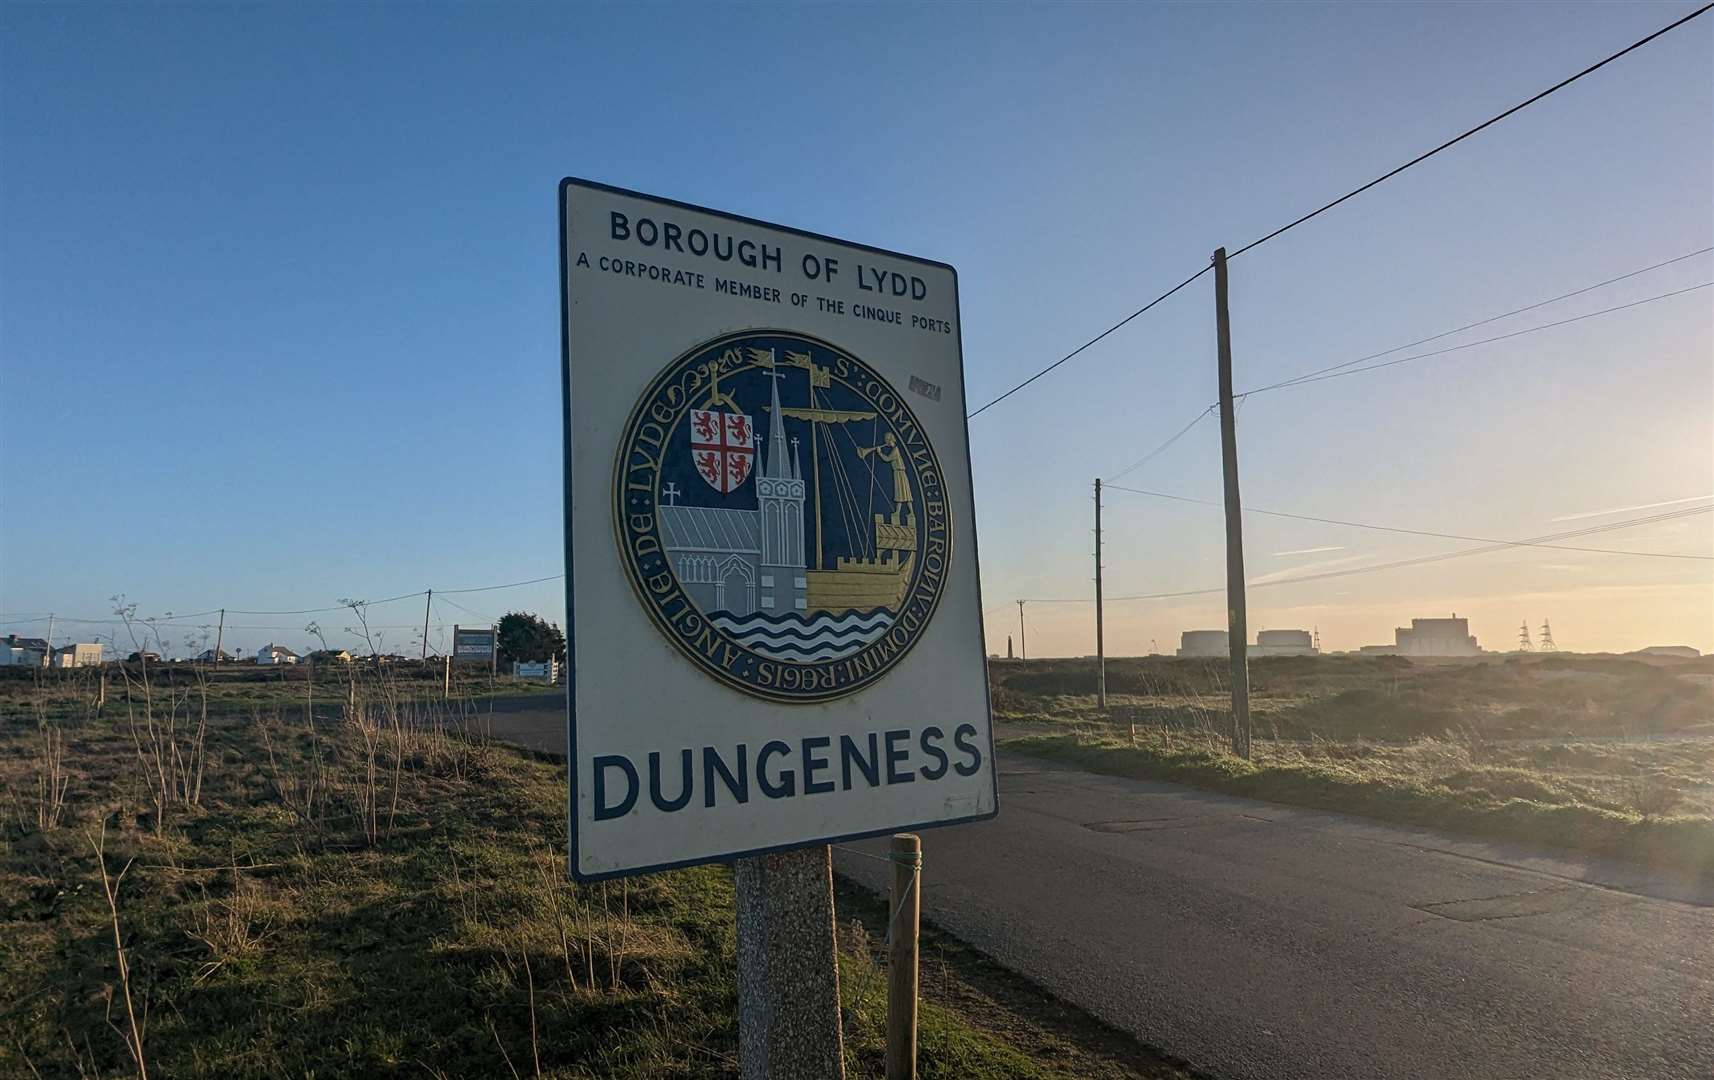 Destination: Dungeness